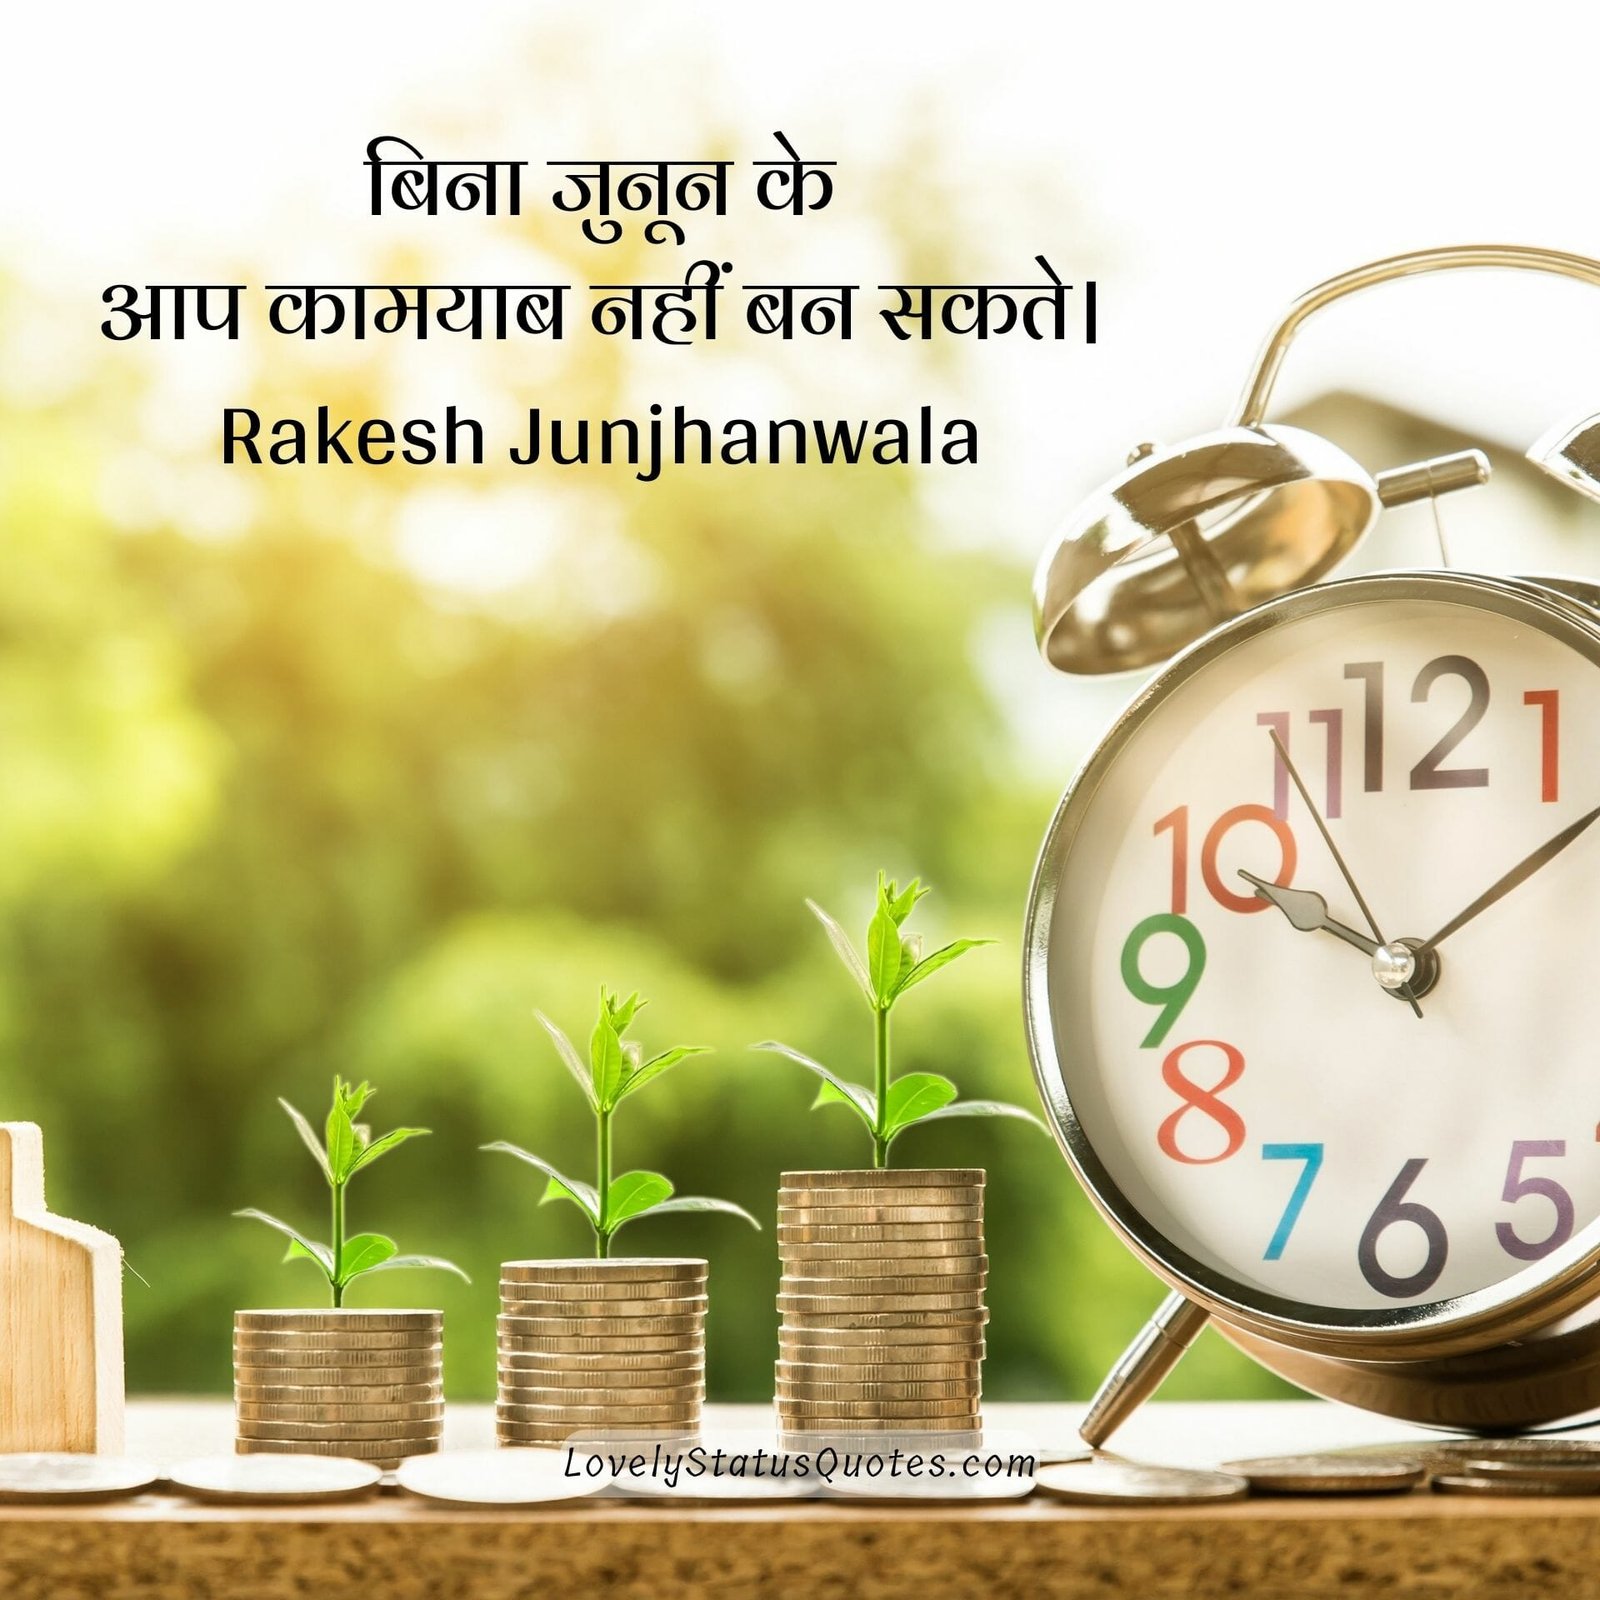 rakesh jhunjhunwala investment quotes in hindi